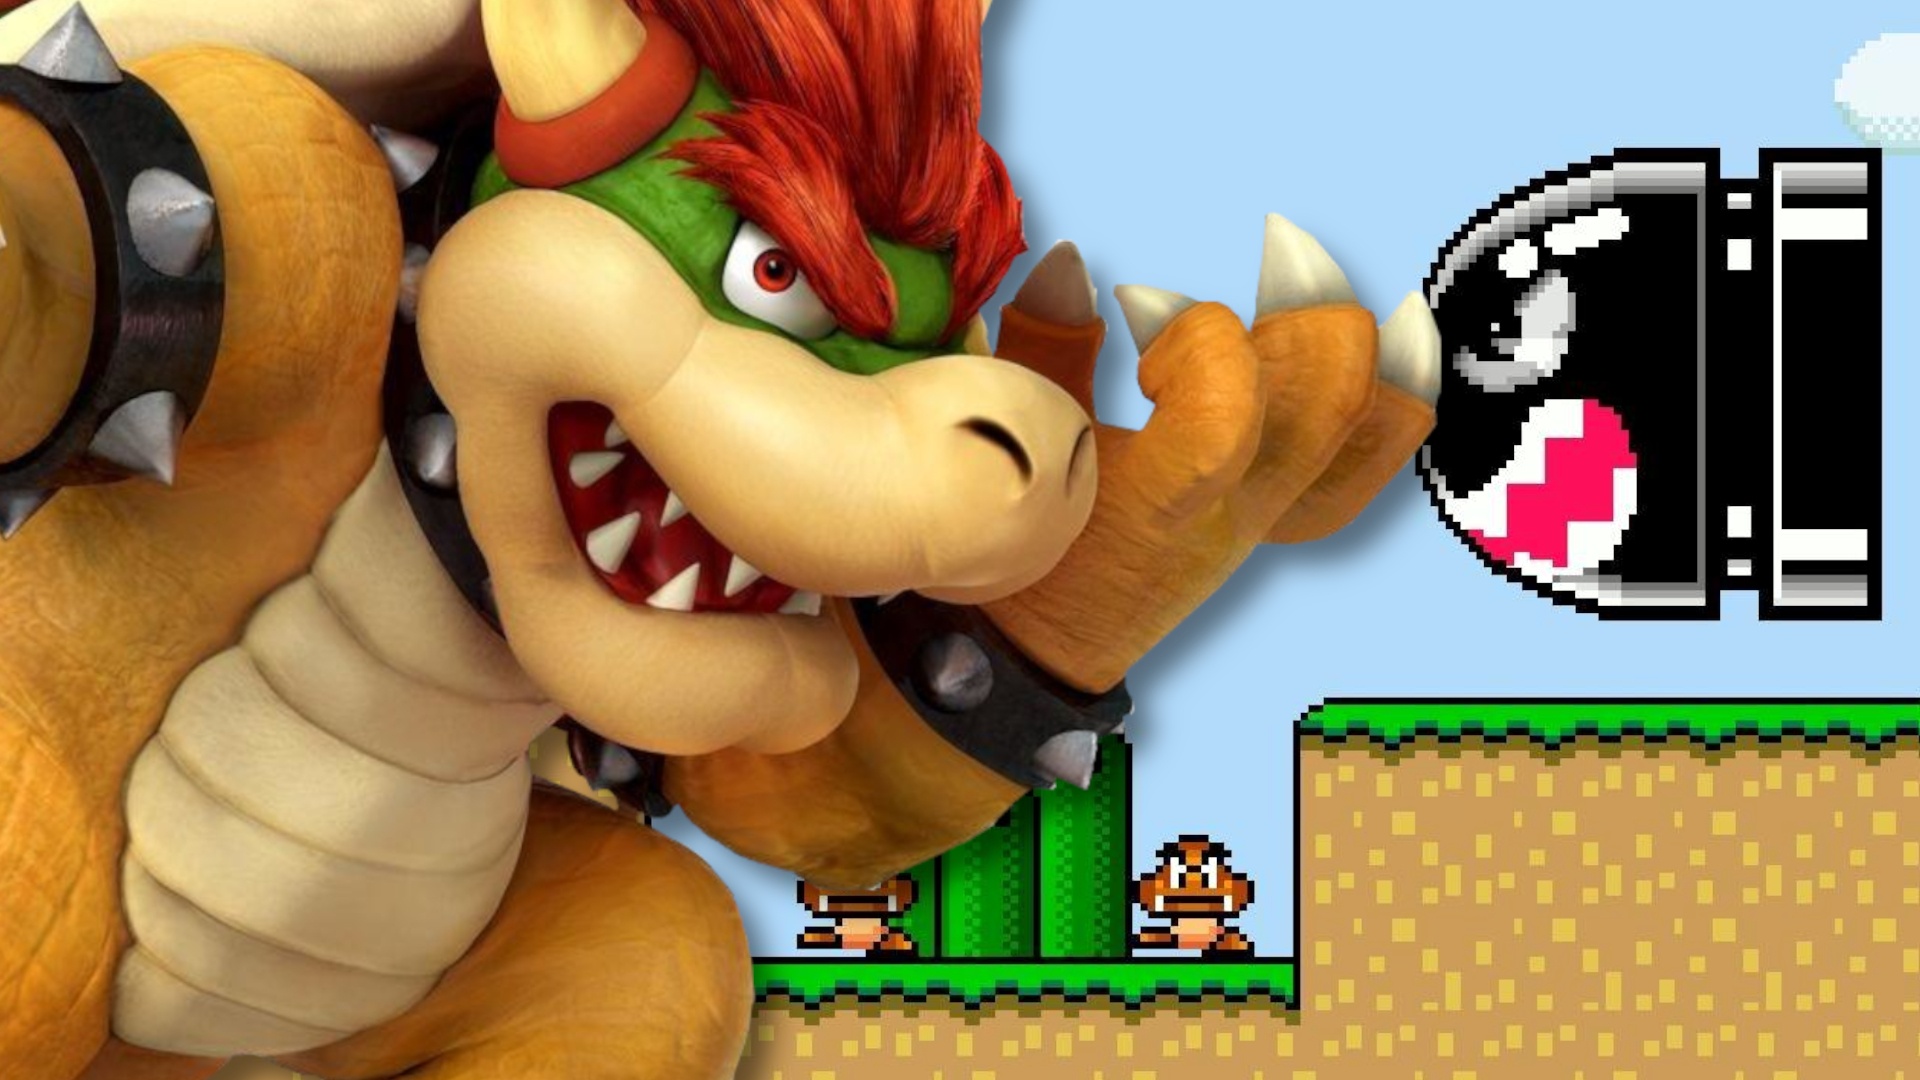 #Nintendo verrät das Alter von Bowser und bringt damit die ganze Mario-Story durcheinander